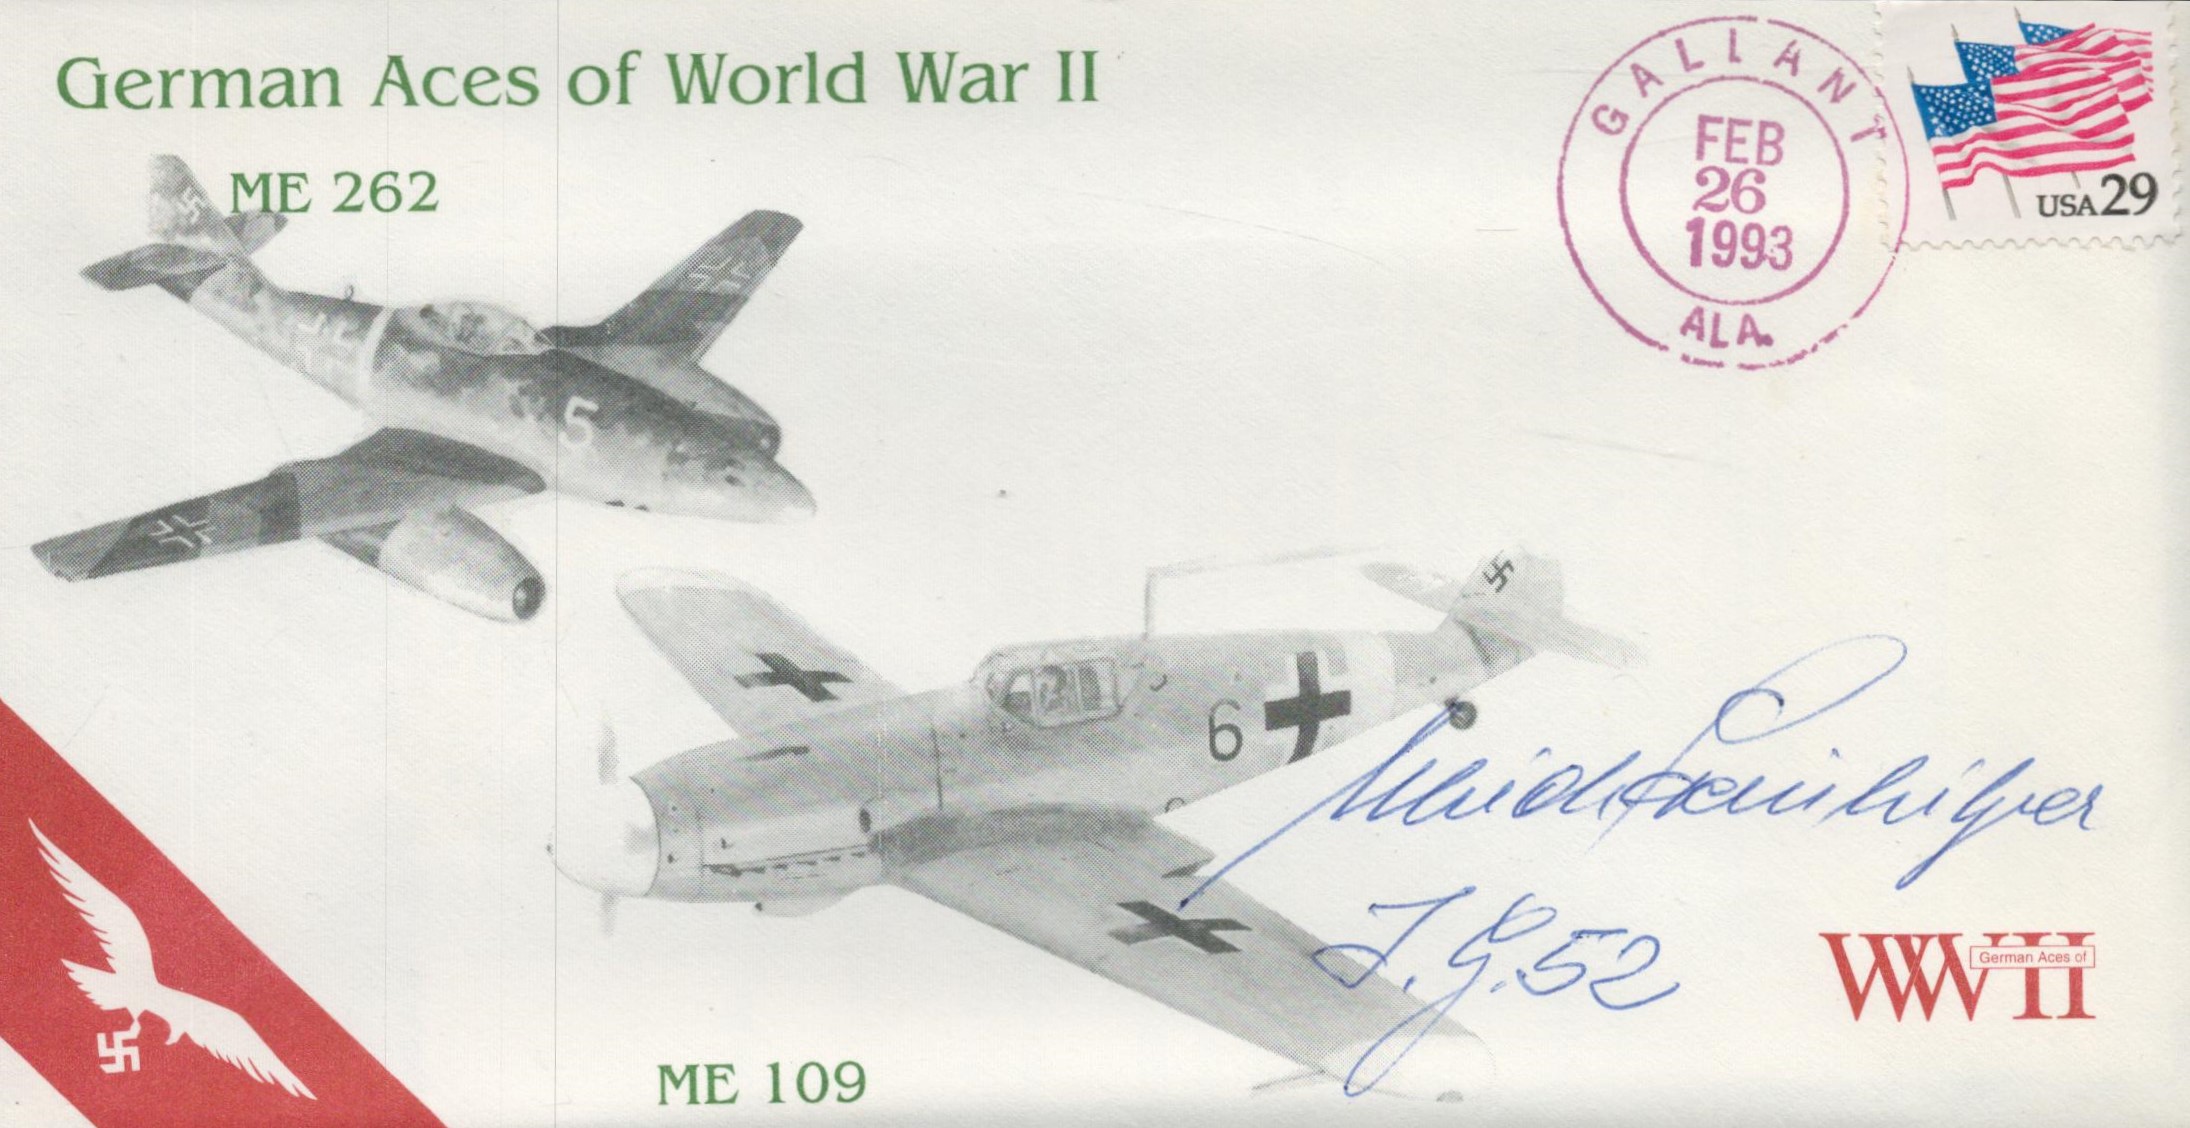 German Aces of World War 11 Signed Ulrich Steinhilper, Luftwaffe Me109 pilot 26 Feb 1993 Ala